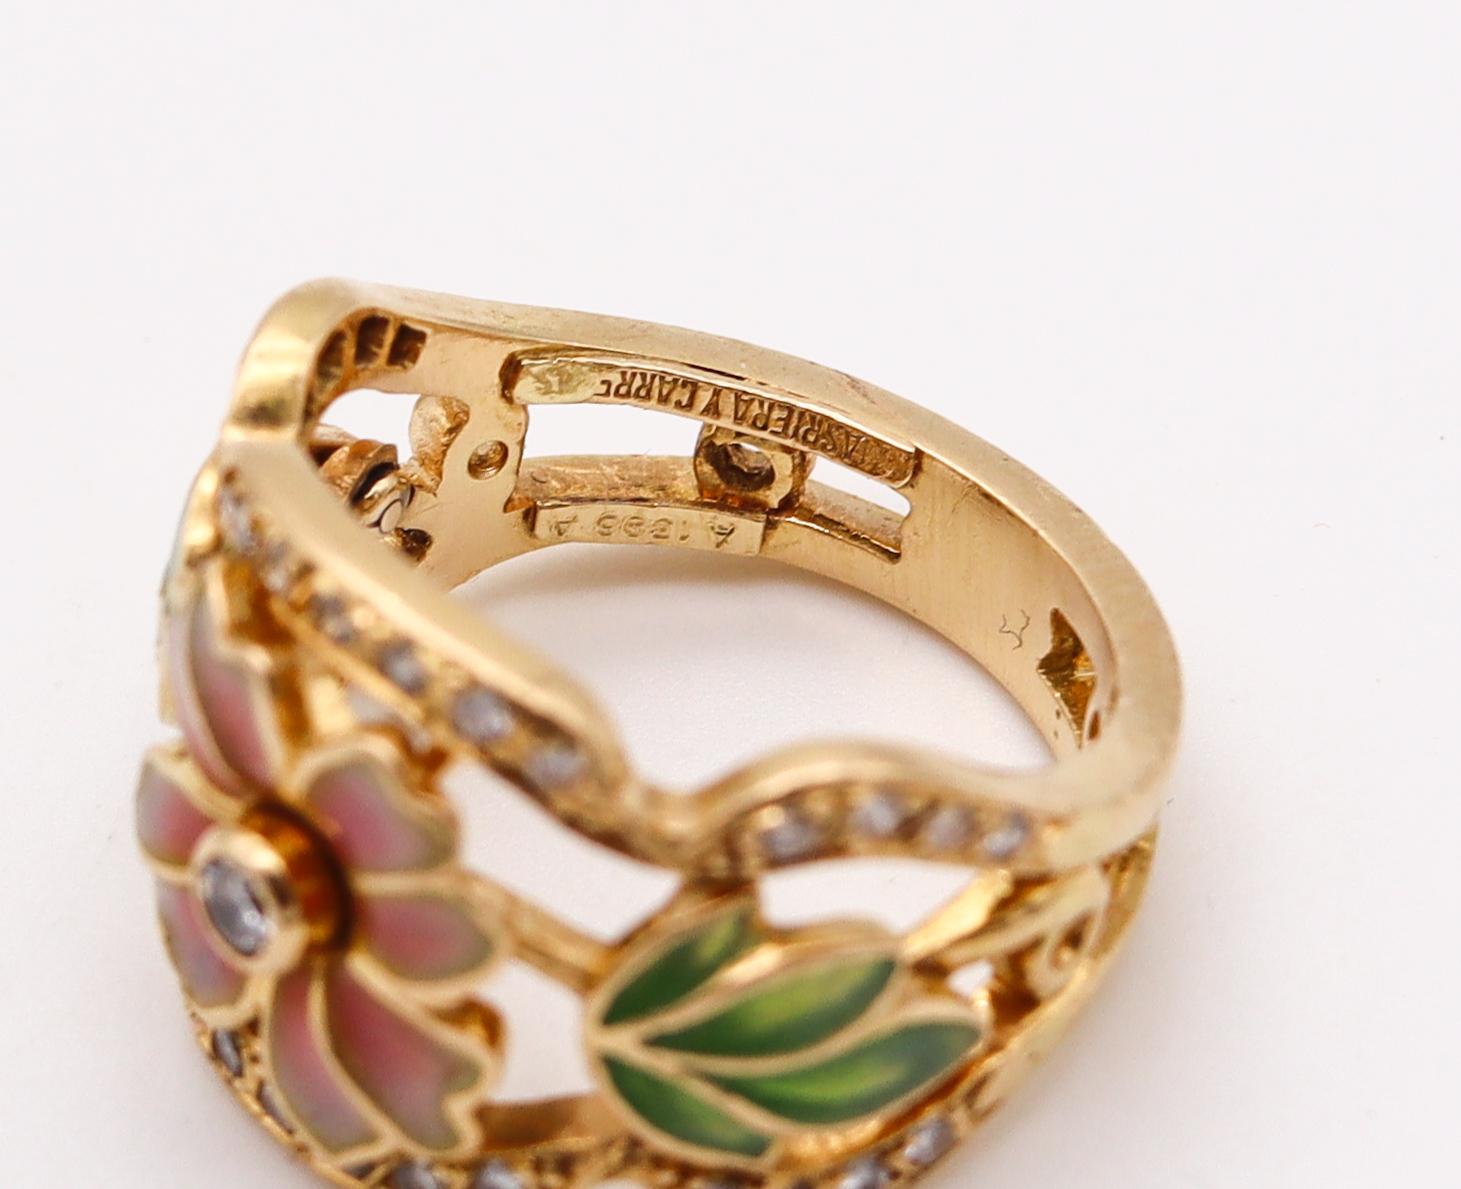 Brilliant Cut Masriera Art Nouveau Plique À Jour Enamel Ring in 18Kt Yellow Gold with Diamonds For Sale